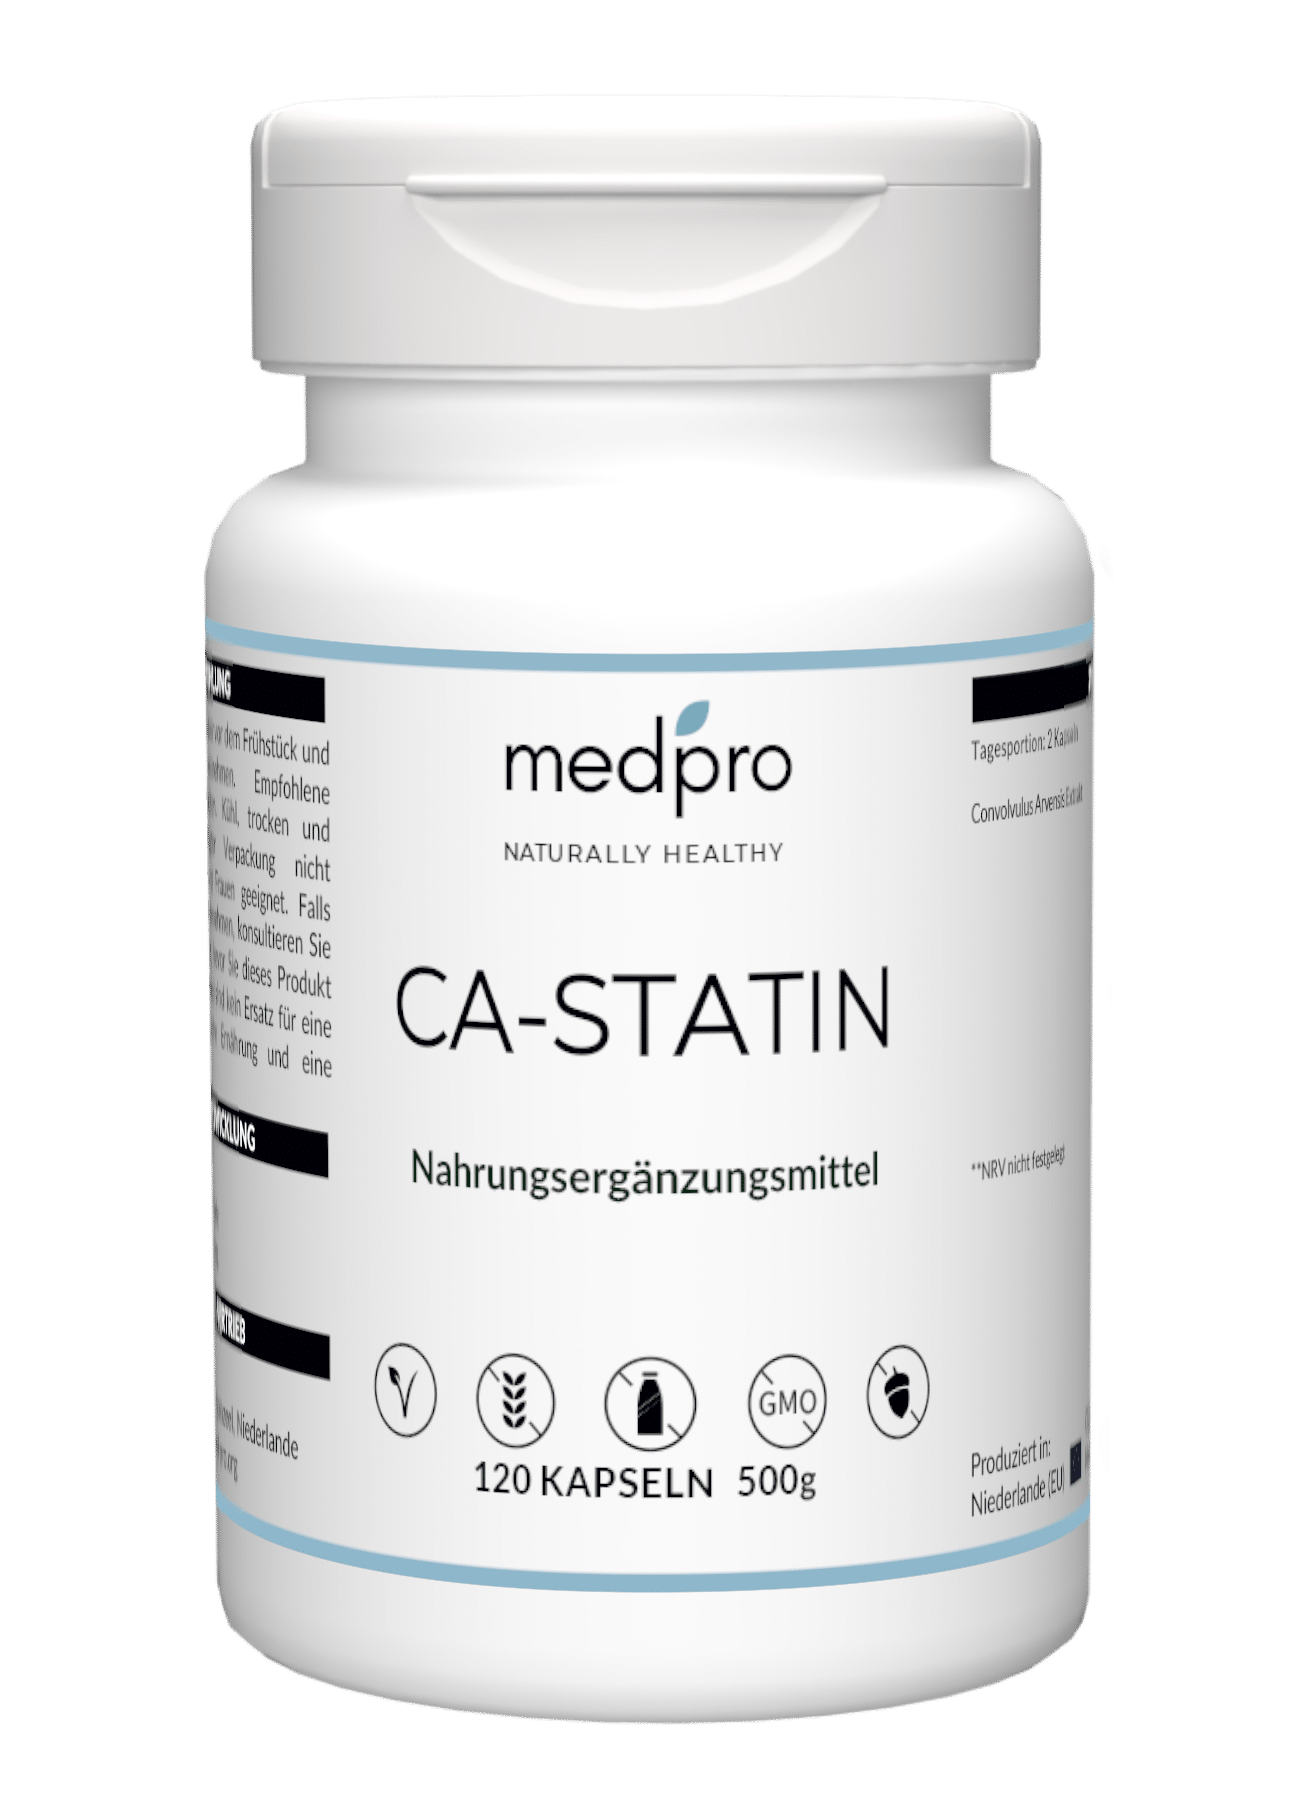 CA-Statin bottle from medpro